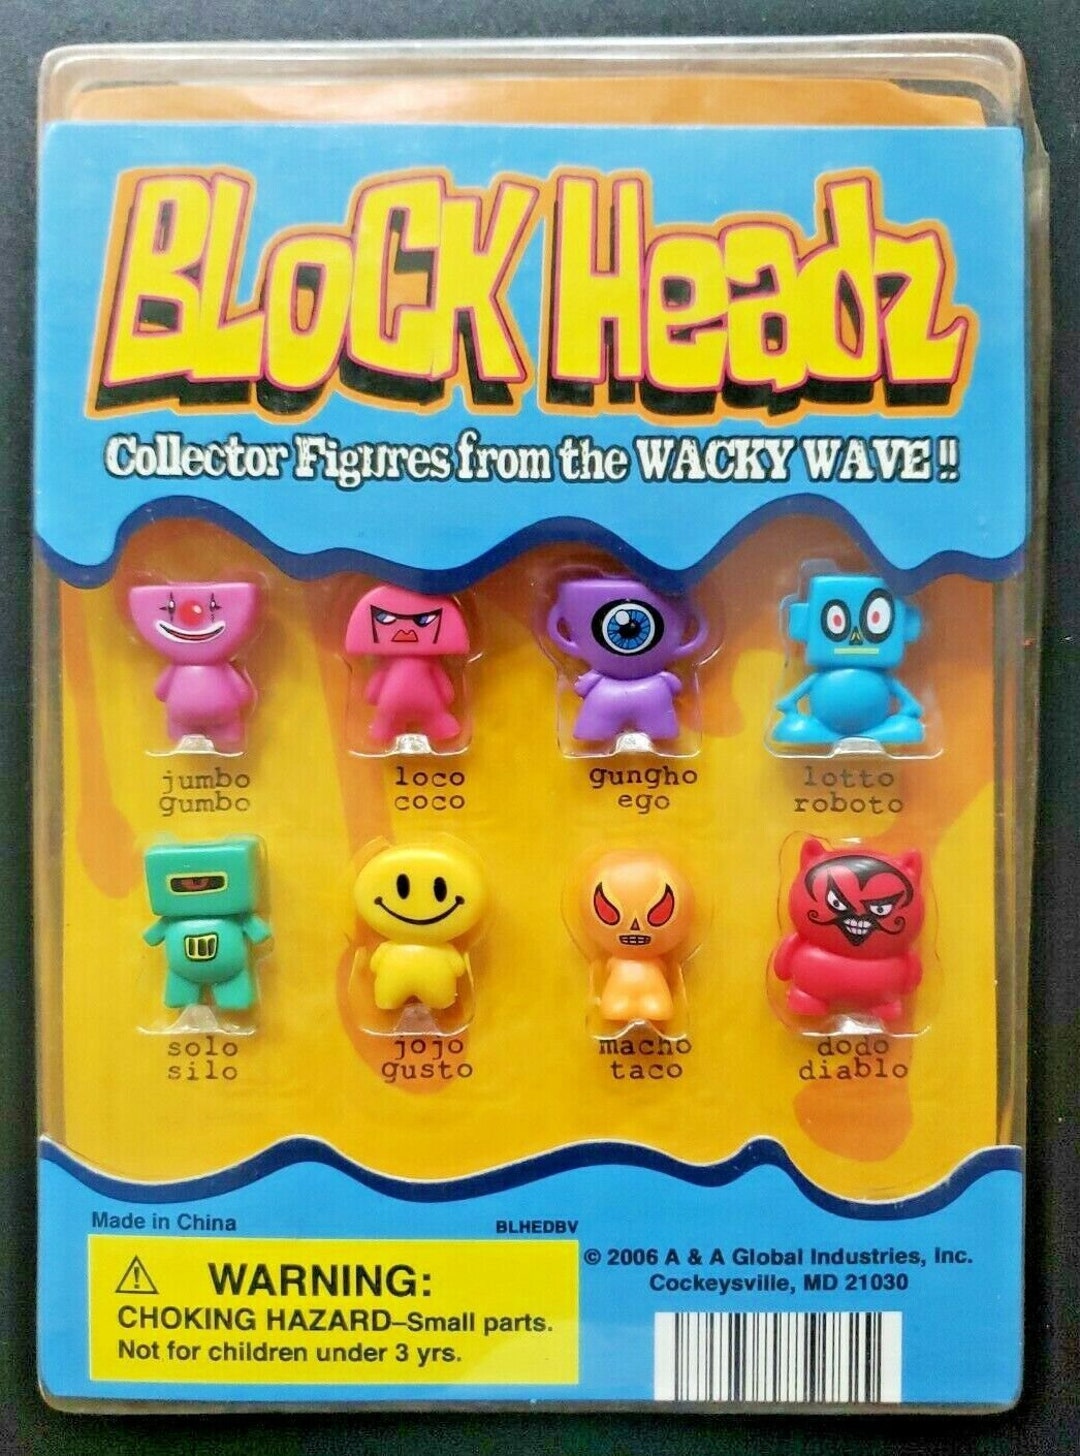 Hat Tack Fun Pins Award Pins Gumball Vending Machine Disp Card Toys #11